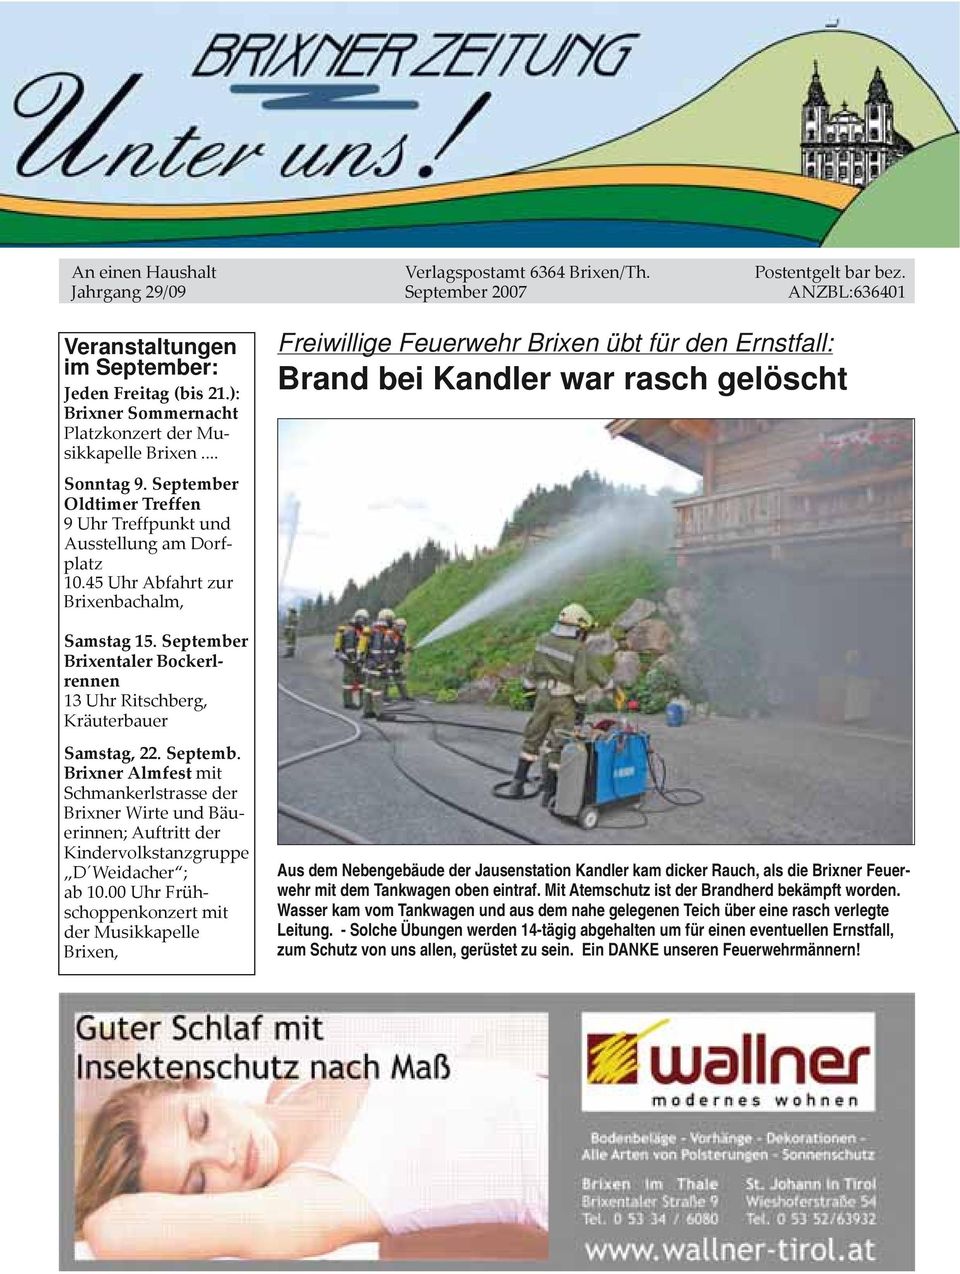 45 Uhr Abfahrt zur Brixenbachalm, Freiwillige Feuerwehr Brixen übt für den Ernstfall: Brand bei Kandler war rasch gelöscht Samstag 15.